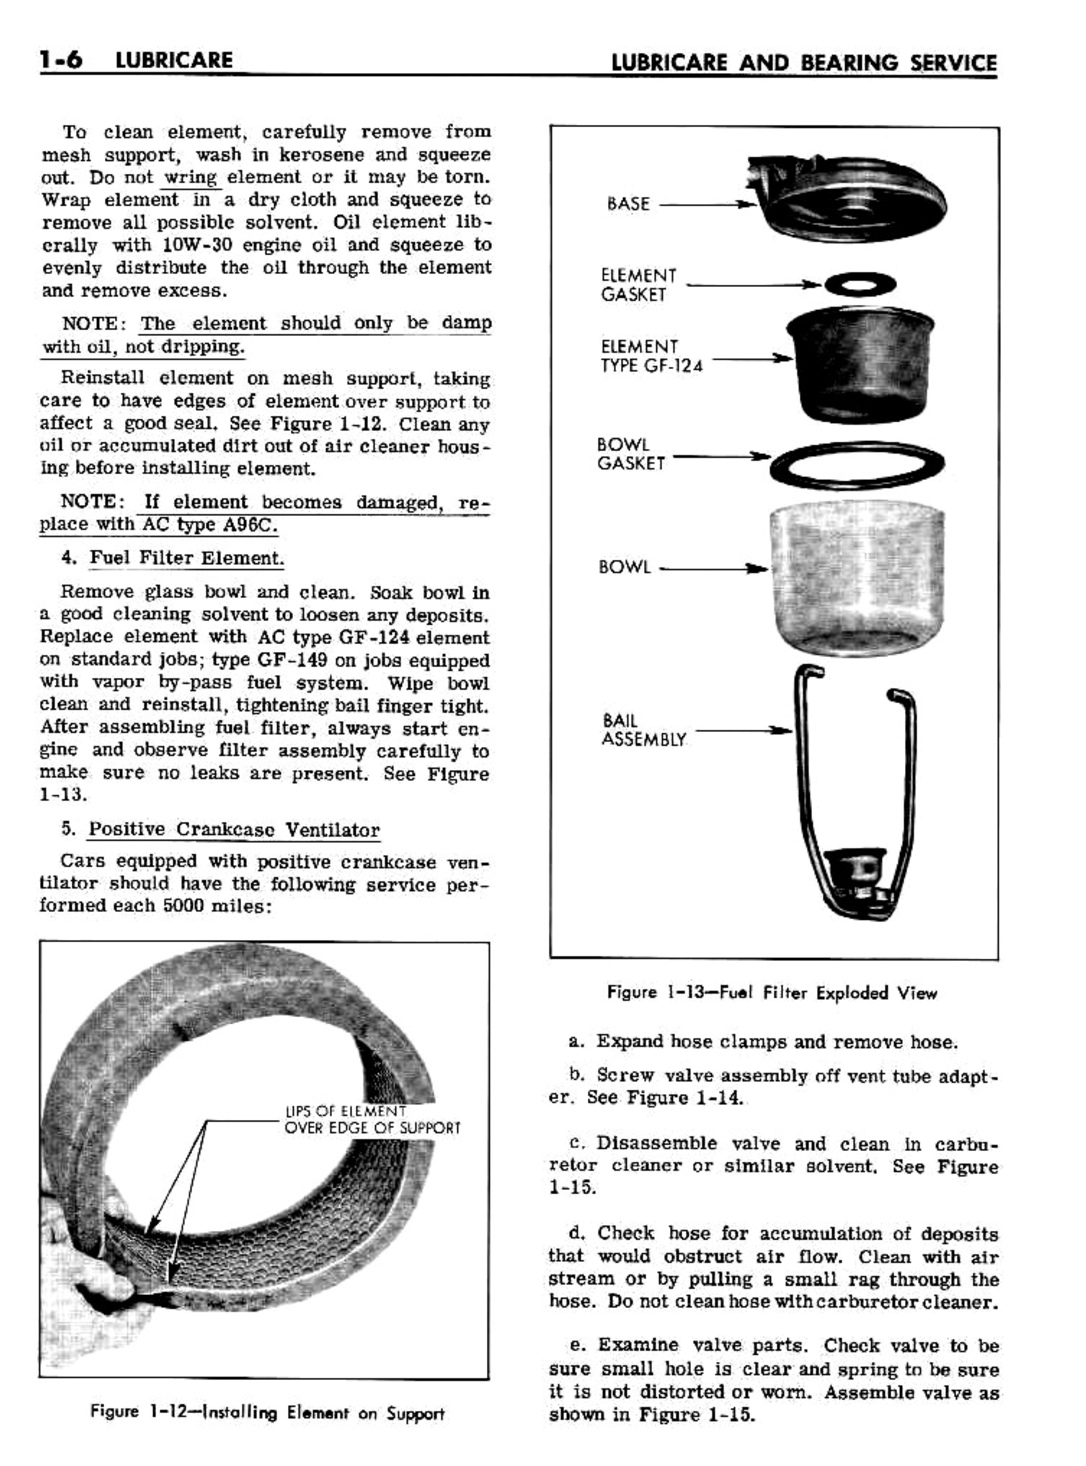 n_02 1961 Buick Shop Manual - Lubricare-006-006.jpg